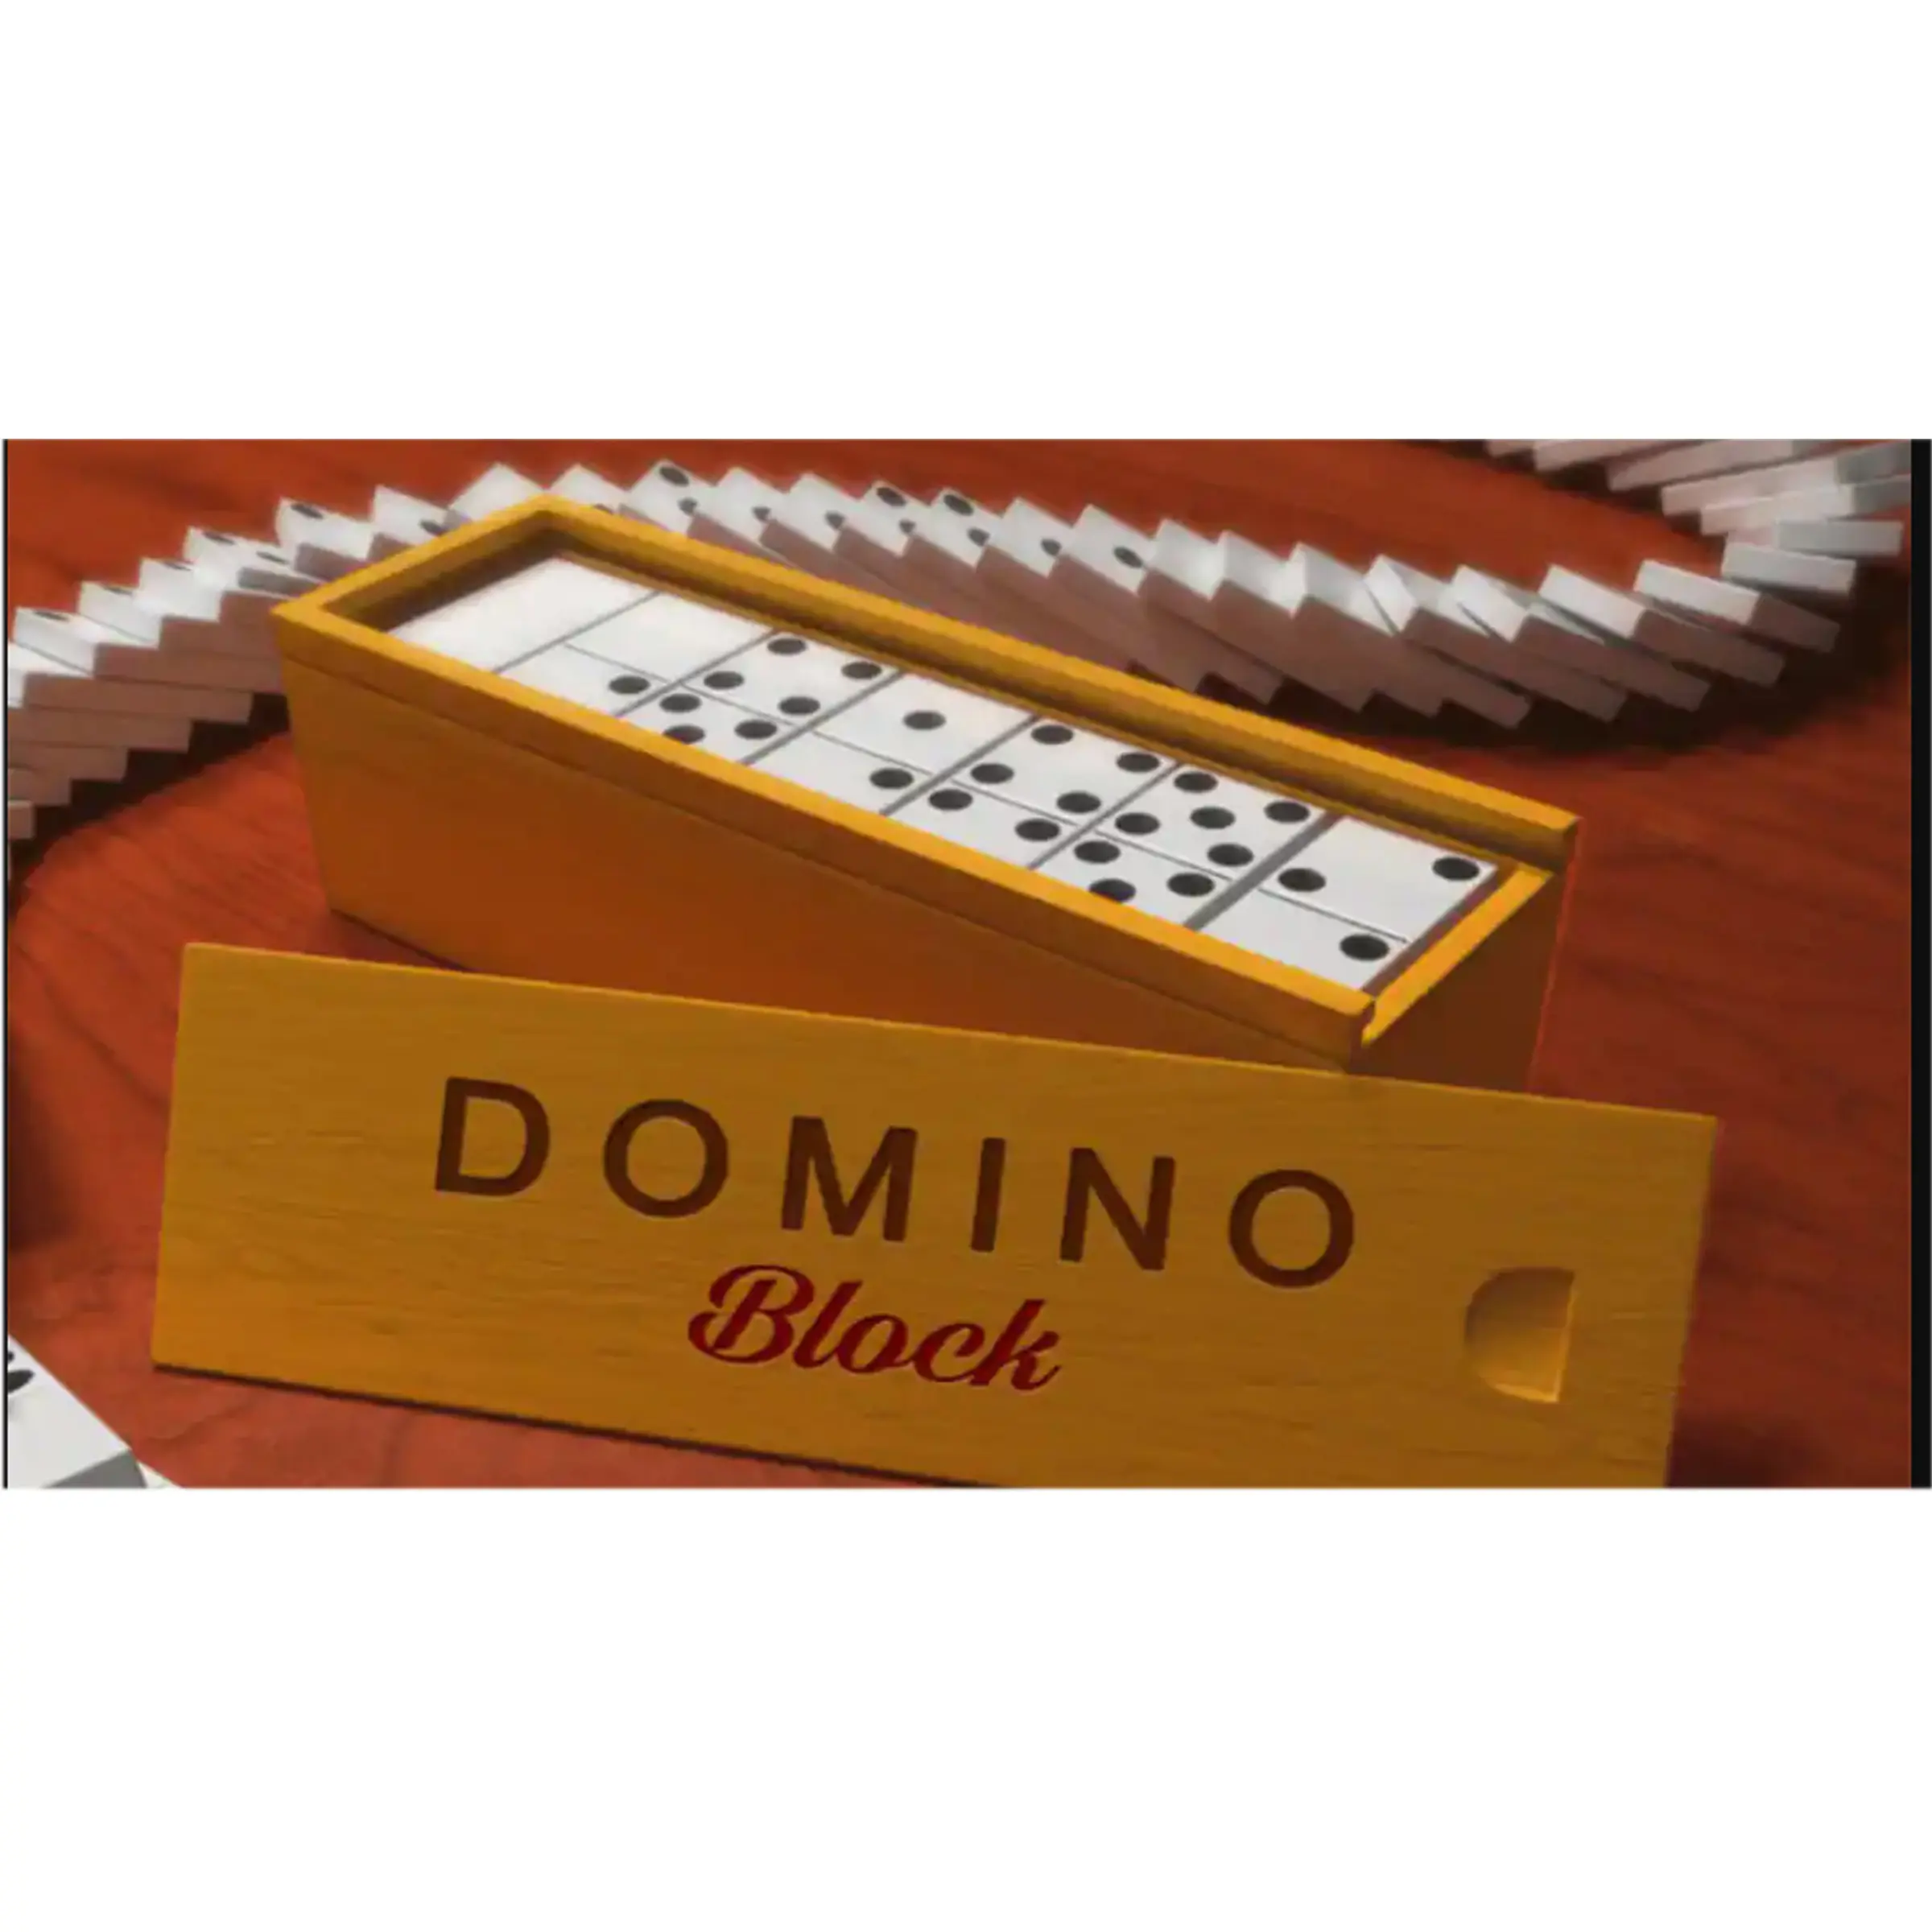 مجموعة ألعاب الدومينو الاحترافية الملونة بأسلوب مذهل 28 قطعة من بلاط الدومينو الخشبي مصنوع من مواد عالية الجودة